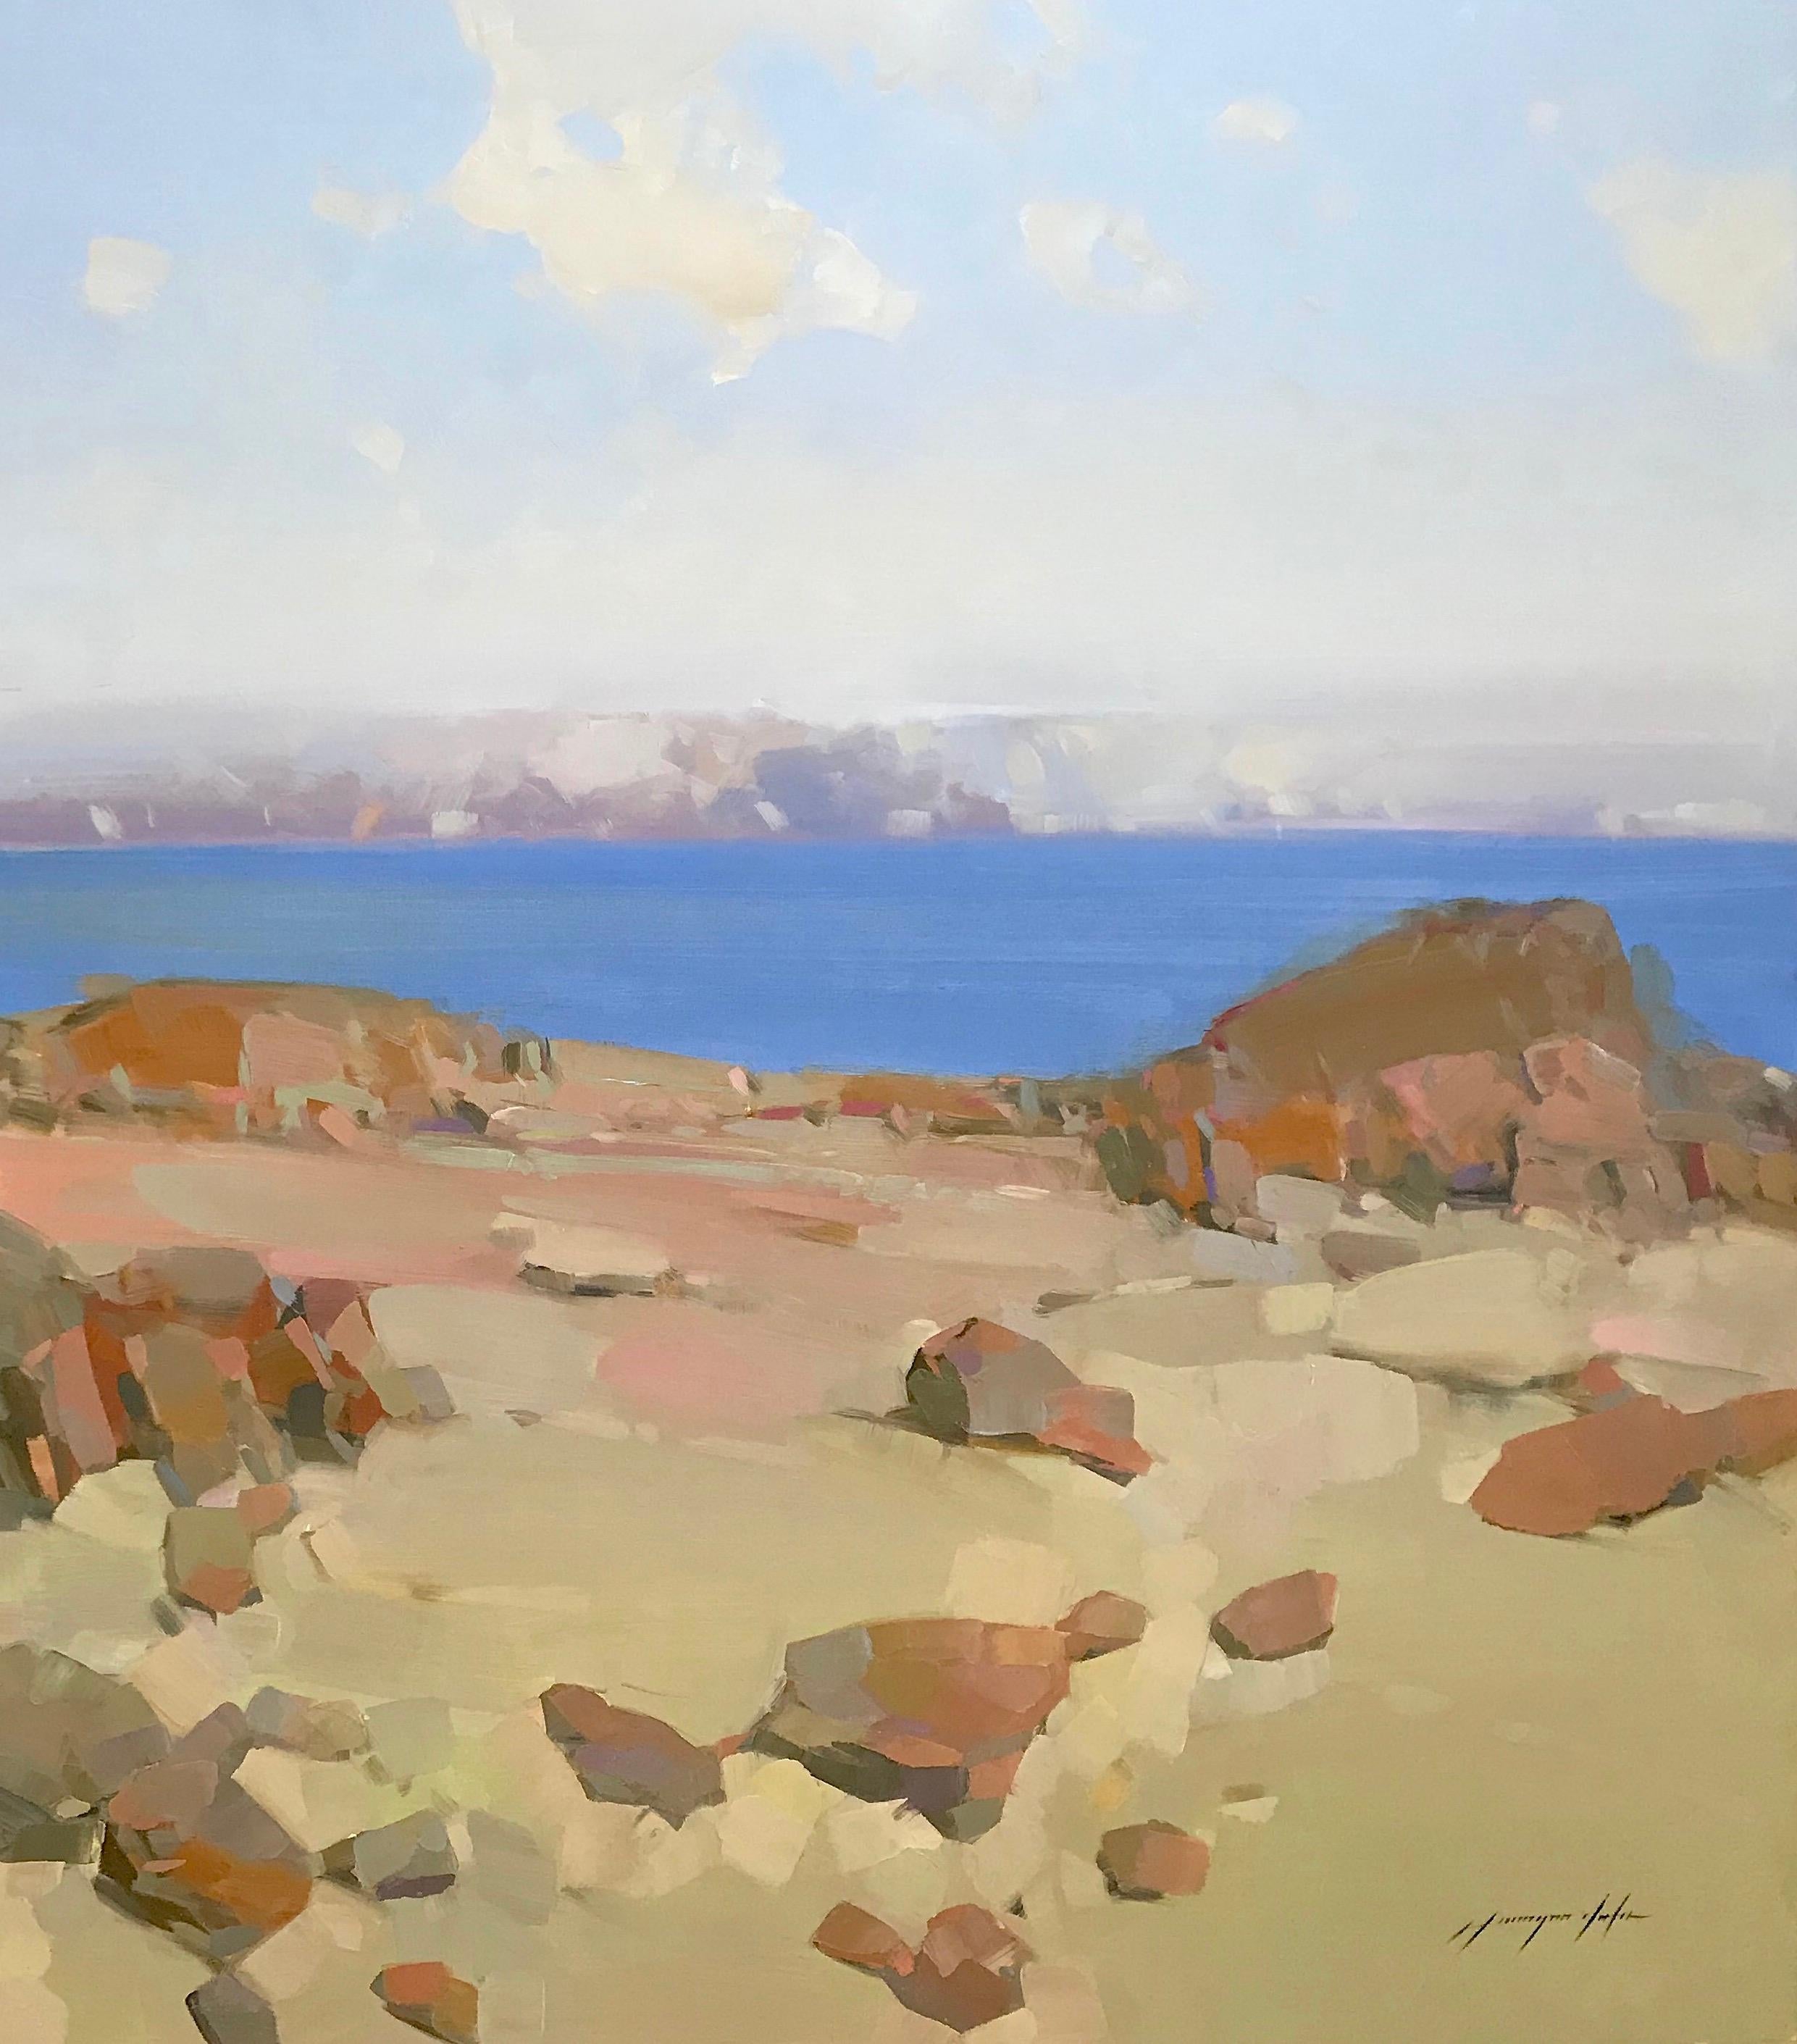 <p>Kommentare des Künstlers<br />Küstenklippe an einem sonnigen Nachmittag. Entfernte violette Berge vor dem tiefblauen Wasser und dem hellen Himmel verleihen Tiefe und einen schönen Blickpunkt. Dieses Gemälde ist Teil von Vahe's langjähriger Serie